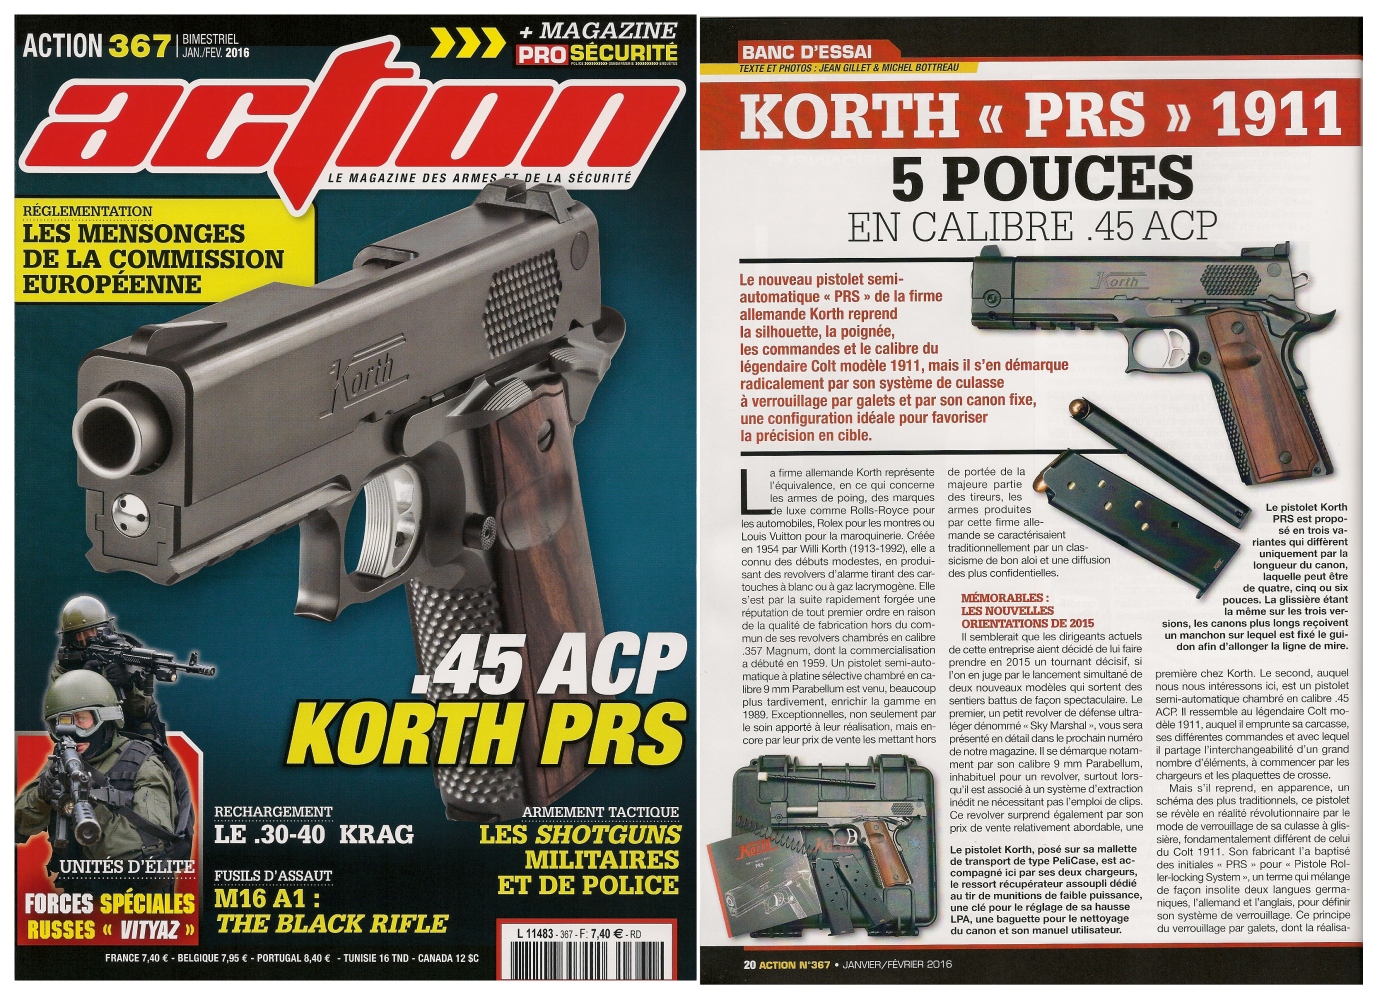 Le banc d'essai du pistolet Korth PRS 1911 a été publié sur 6 pages dans le magazine Action n°367 (janvier-février 2016).